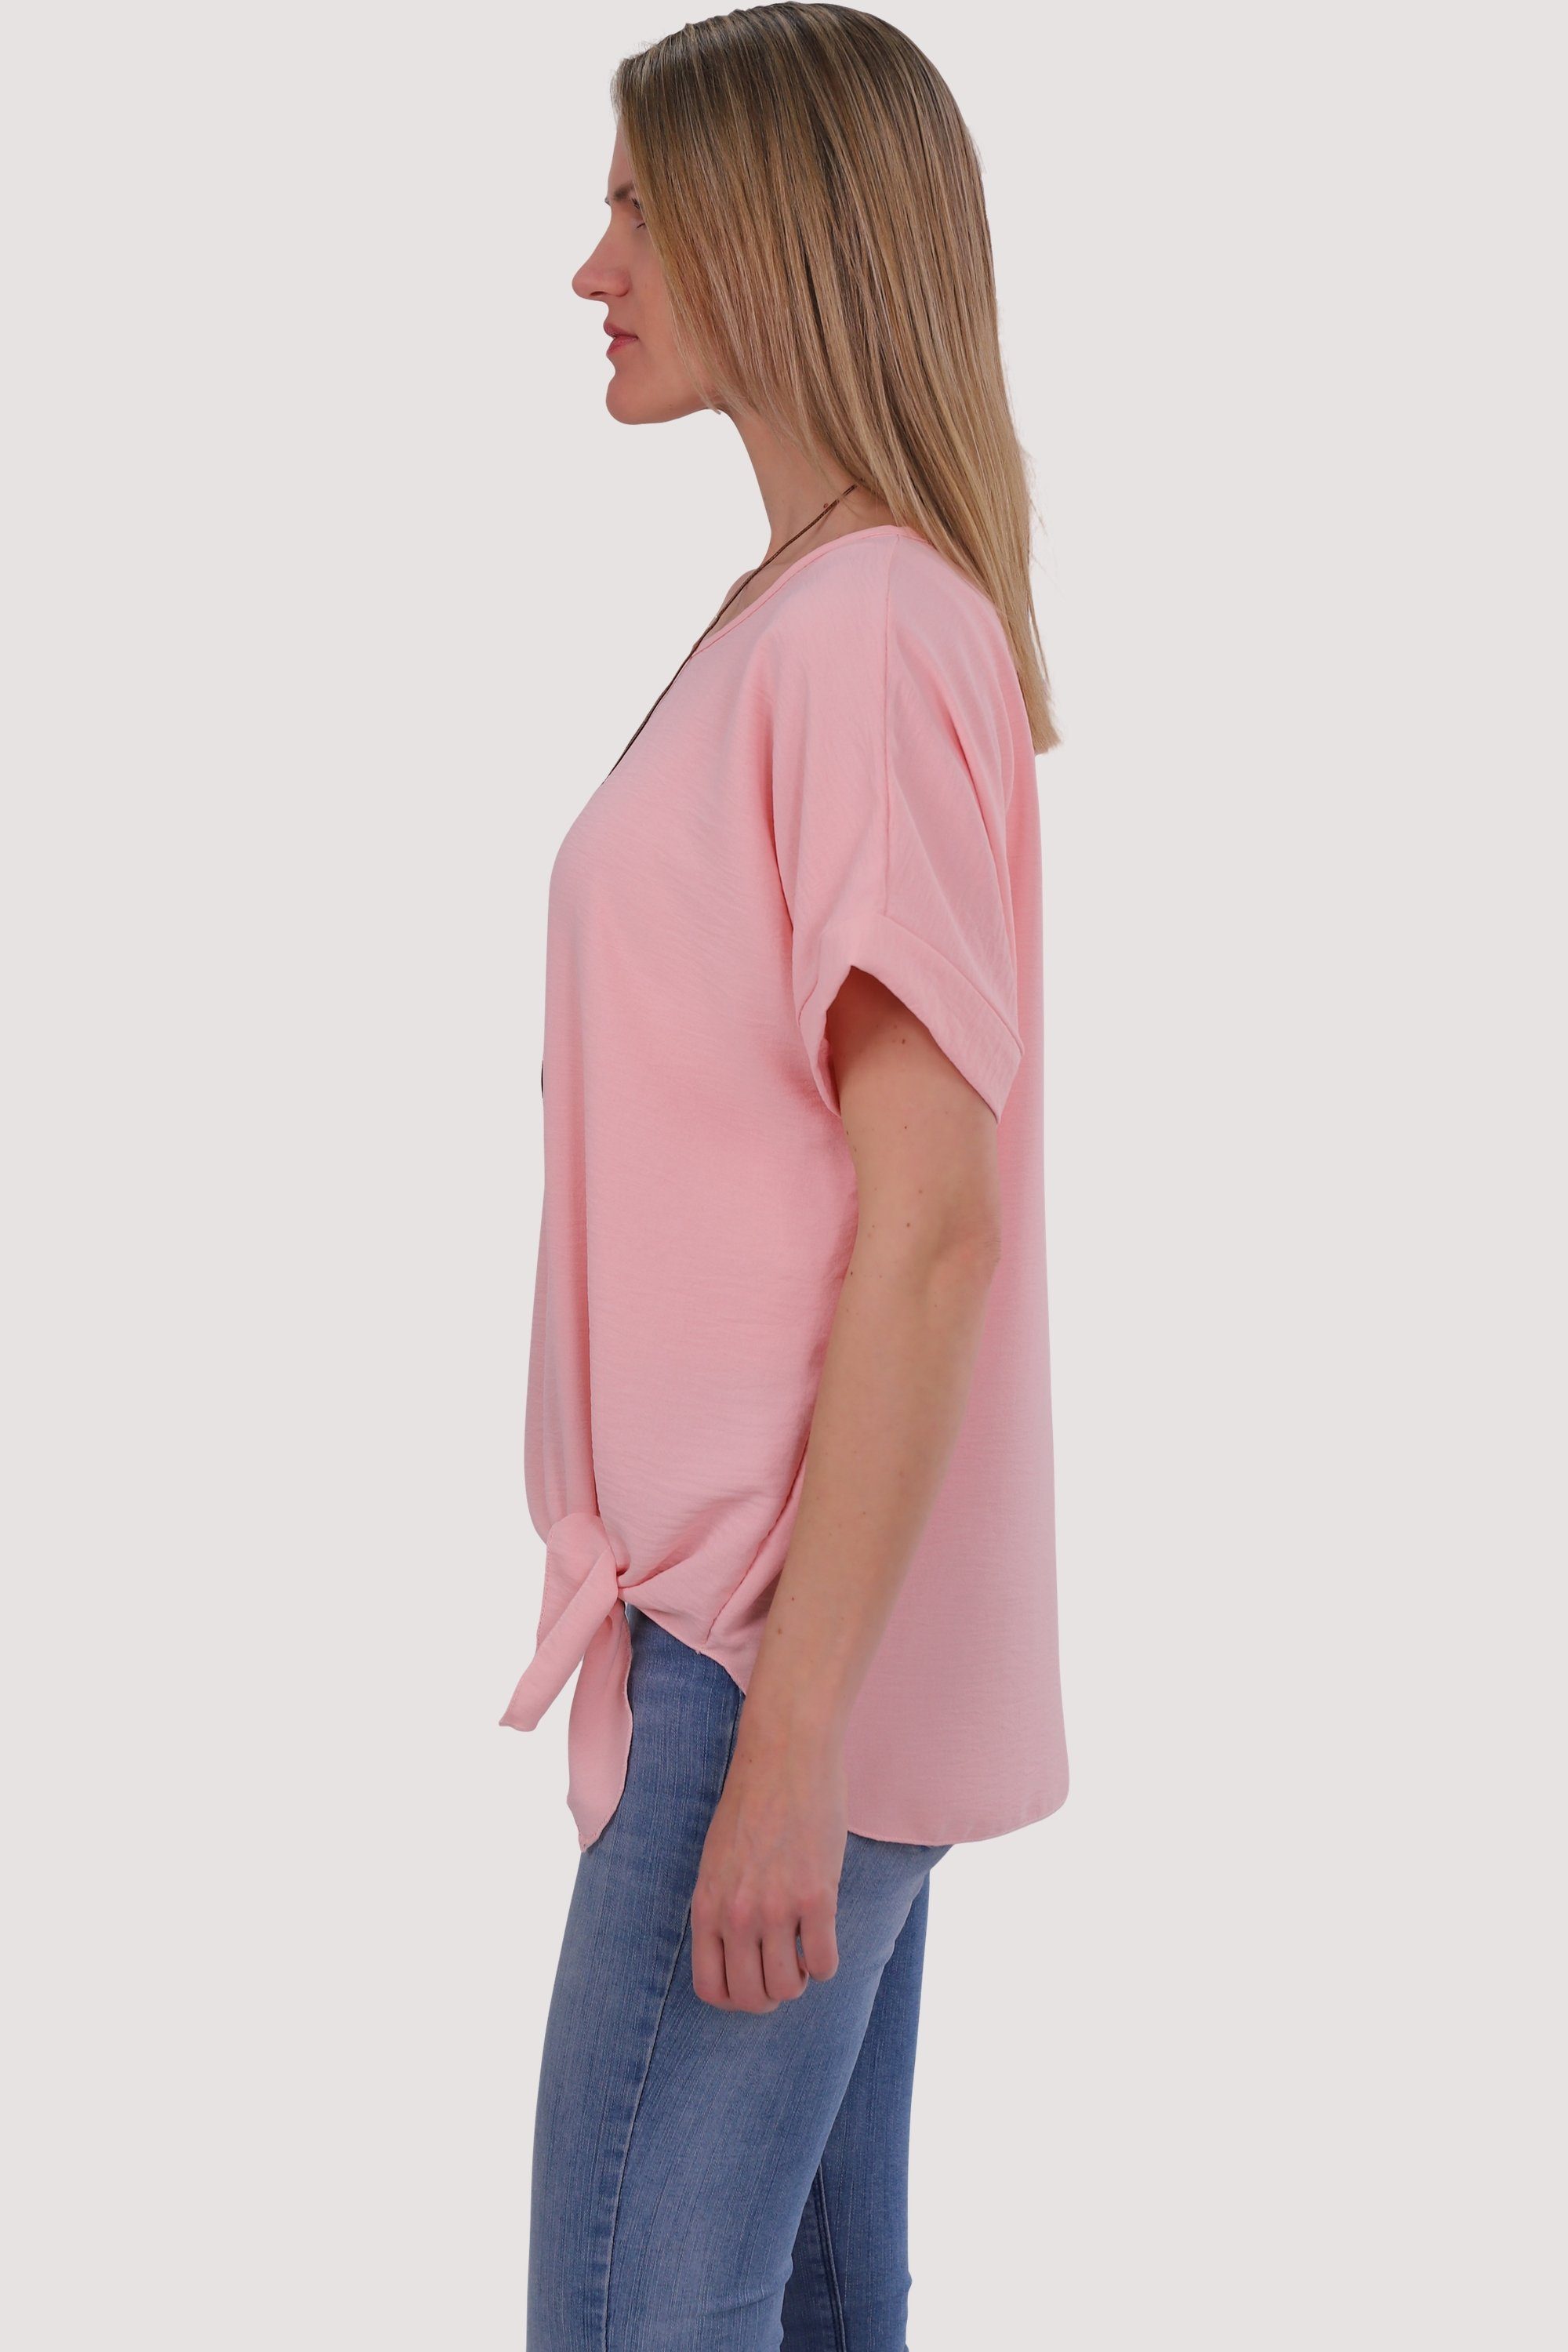 malito more than 10508 Kette Bindeknoten rosa fashion und Blusenshirt mit Einheitsgröße